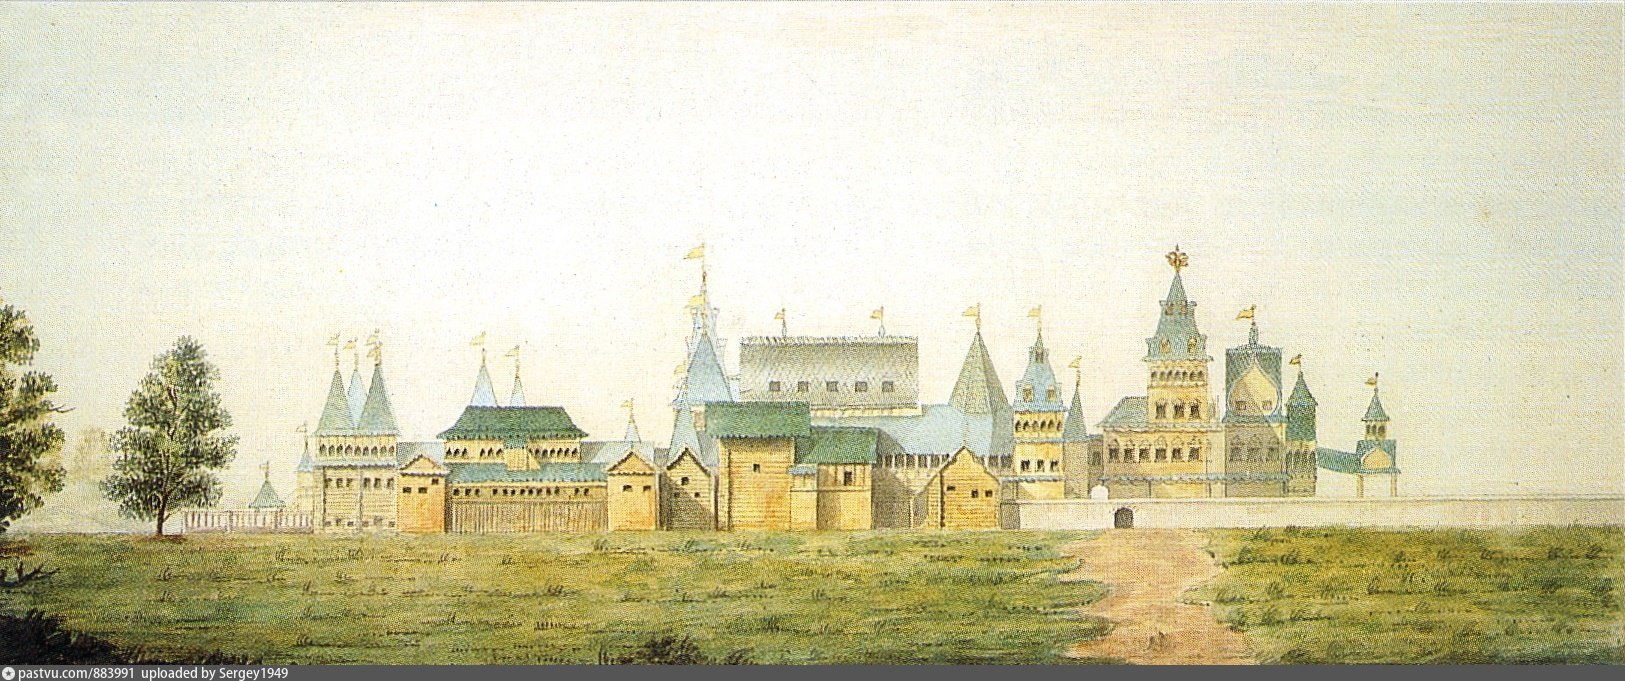 царский дворец в коломенском